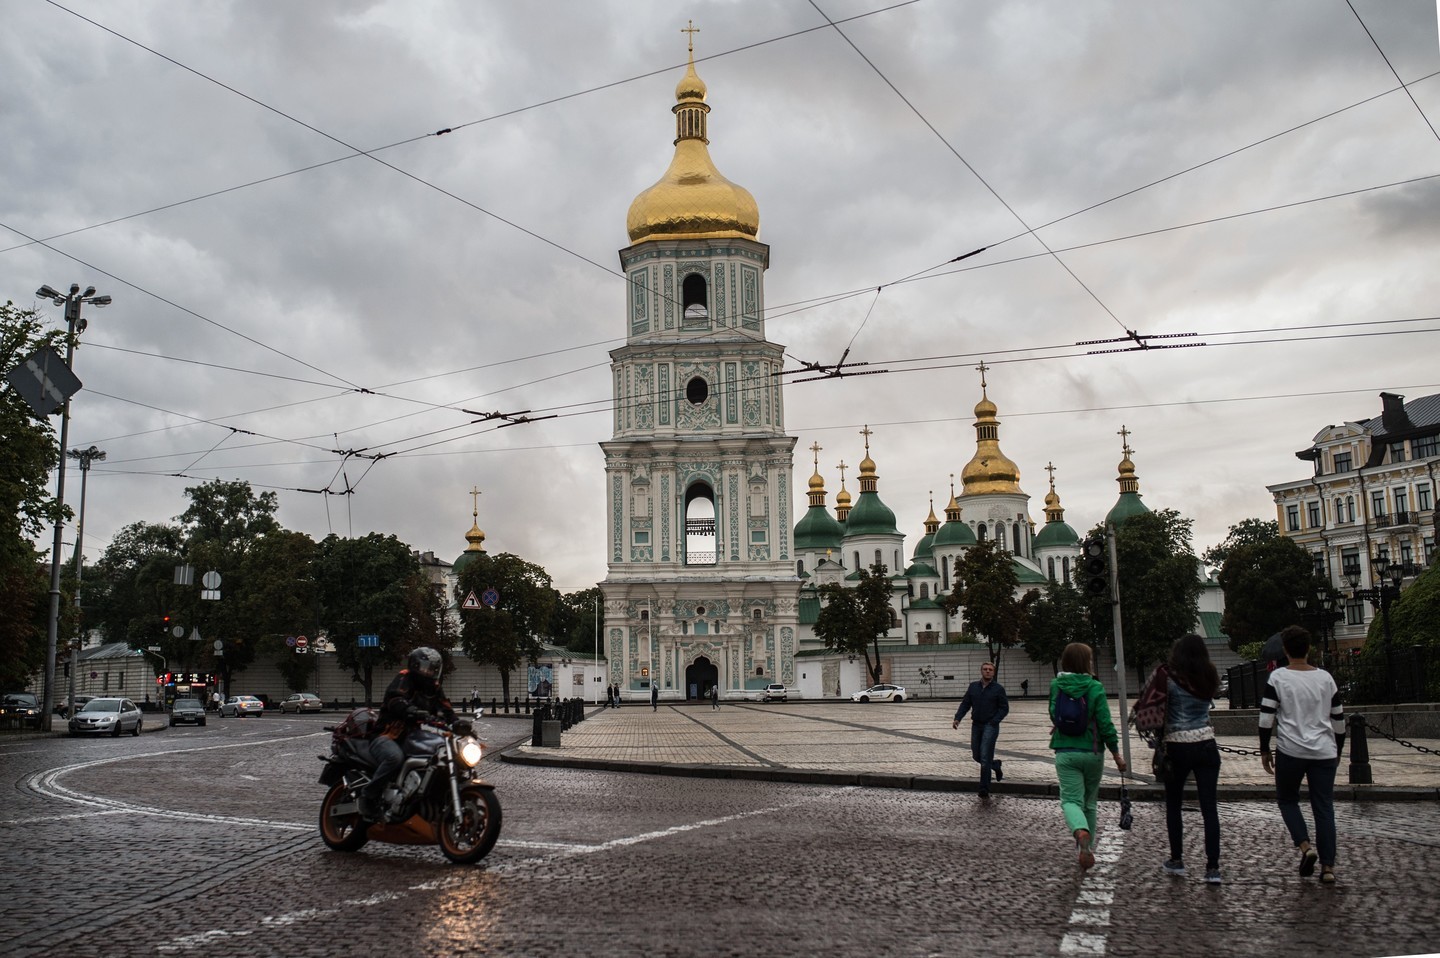 Колокольня Софийского собора на Софийской площади в Киеве.
Фото: &copy; РИА Новости/Евгения Новоженина